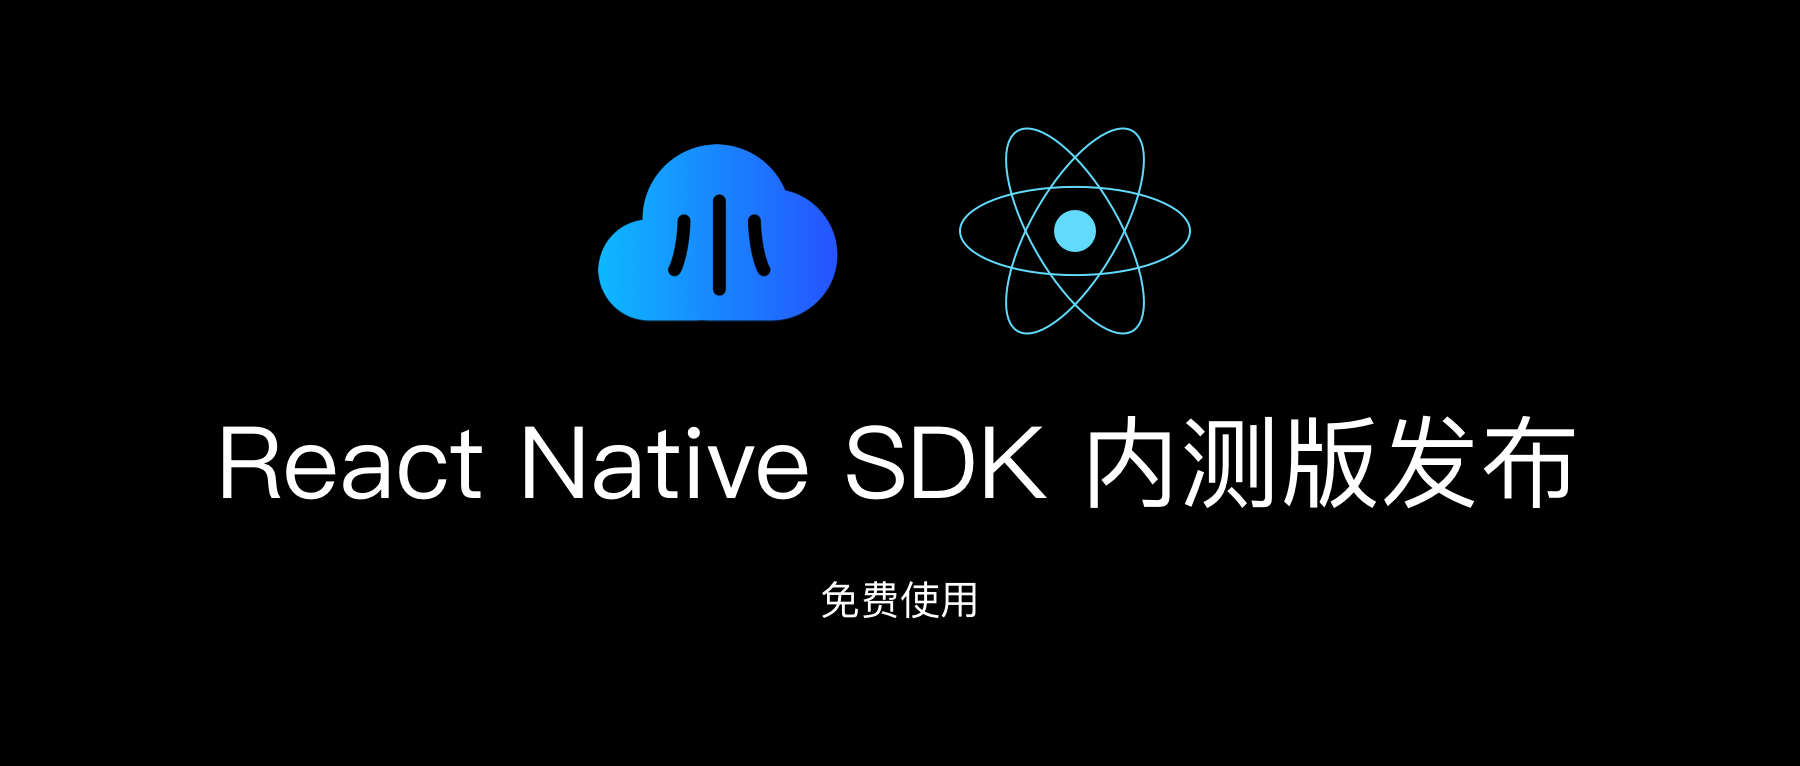 知晓云 React Native SDK 内测版发布